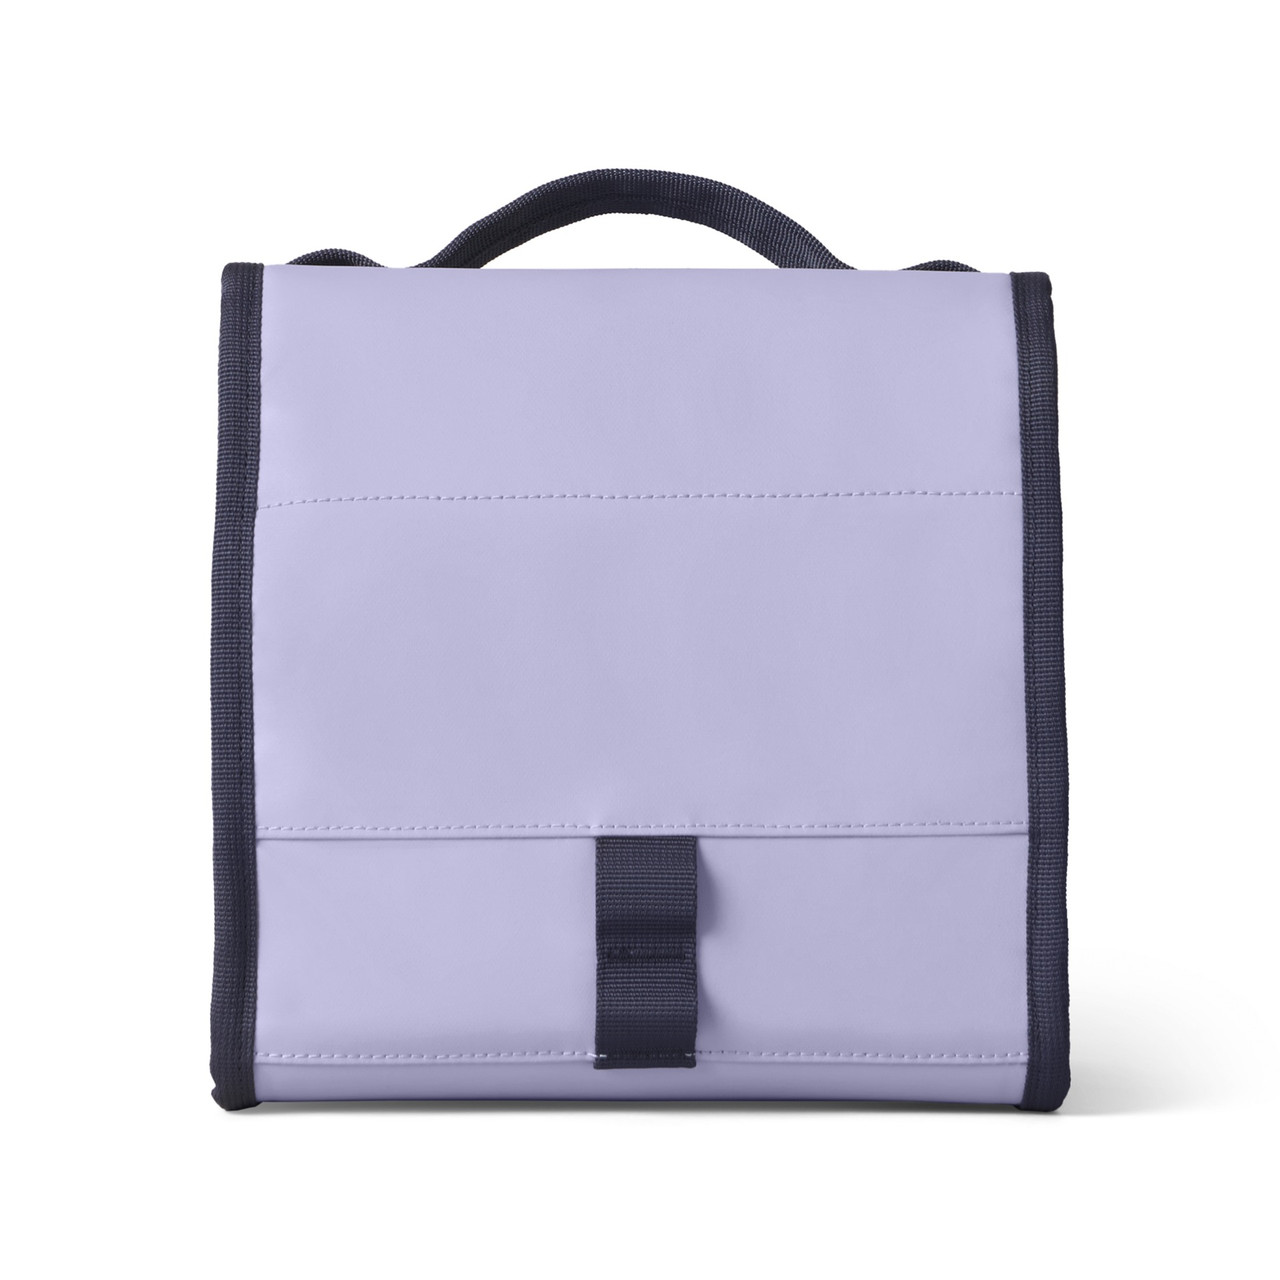 YETI- Daytrip Lunch Bag Cosmic Lilac